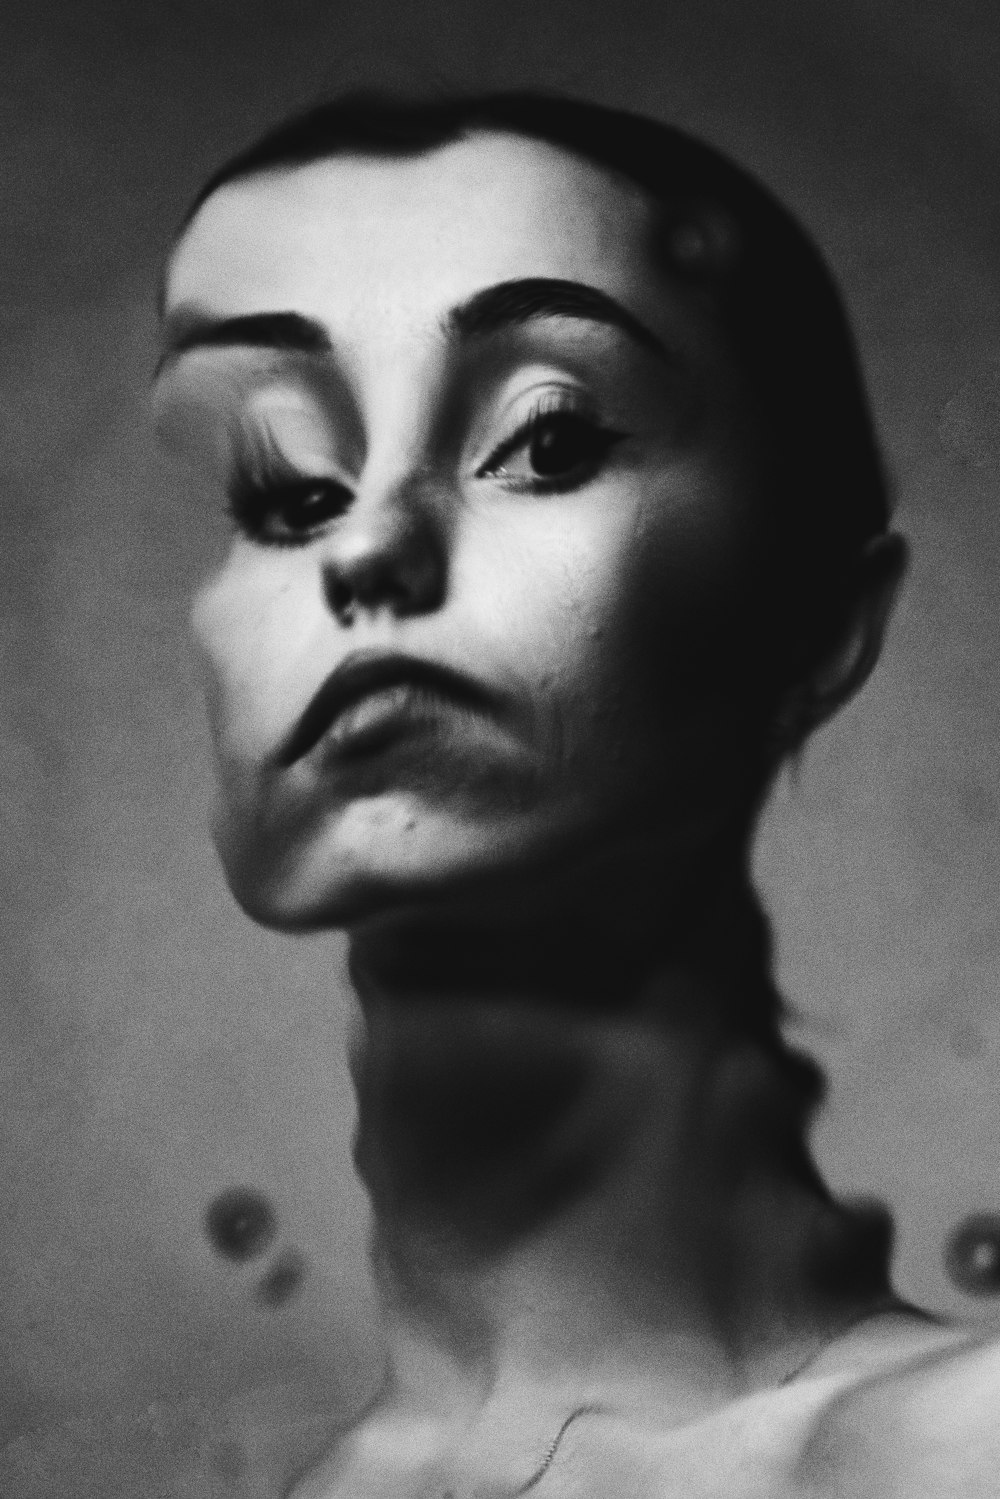 uma foto em preto e branco do rosto de uma mulher